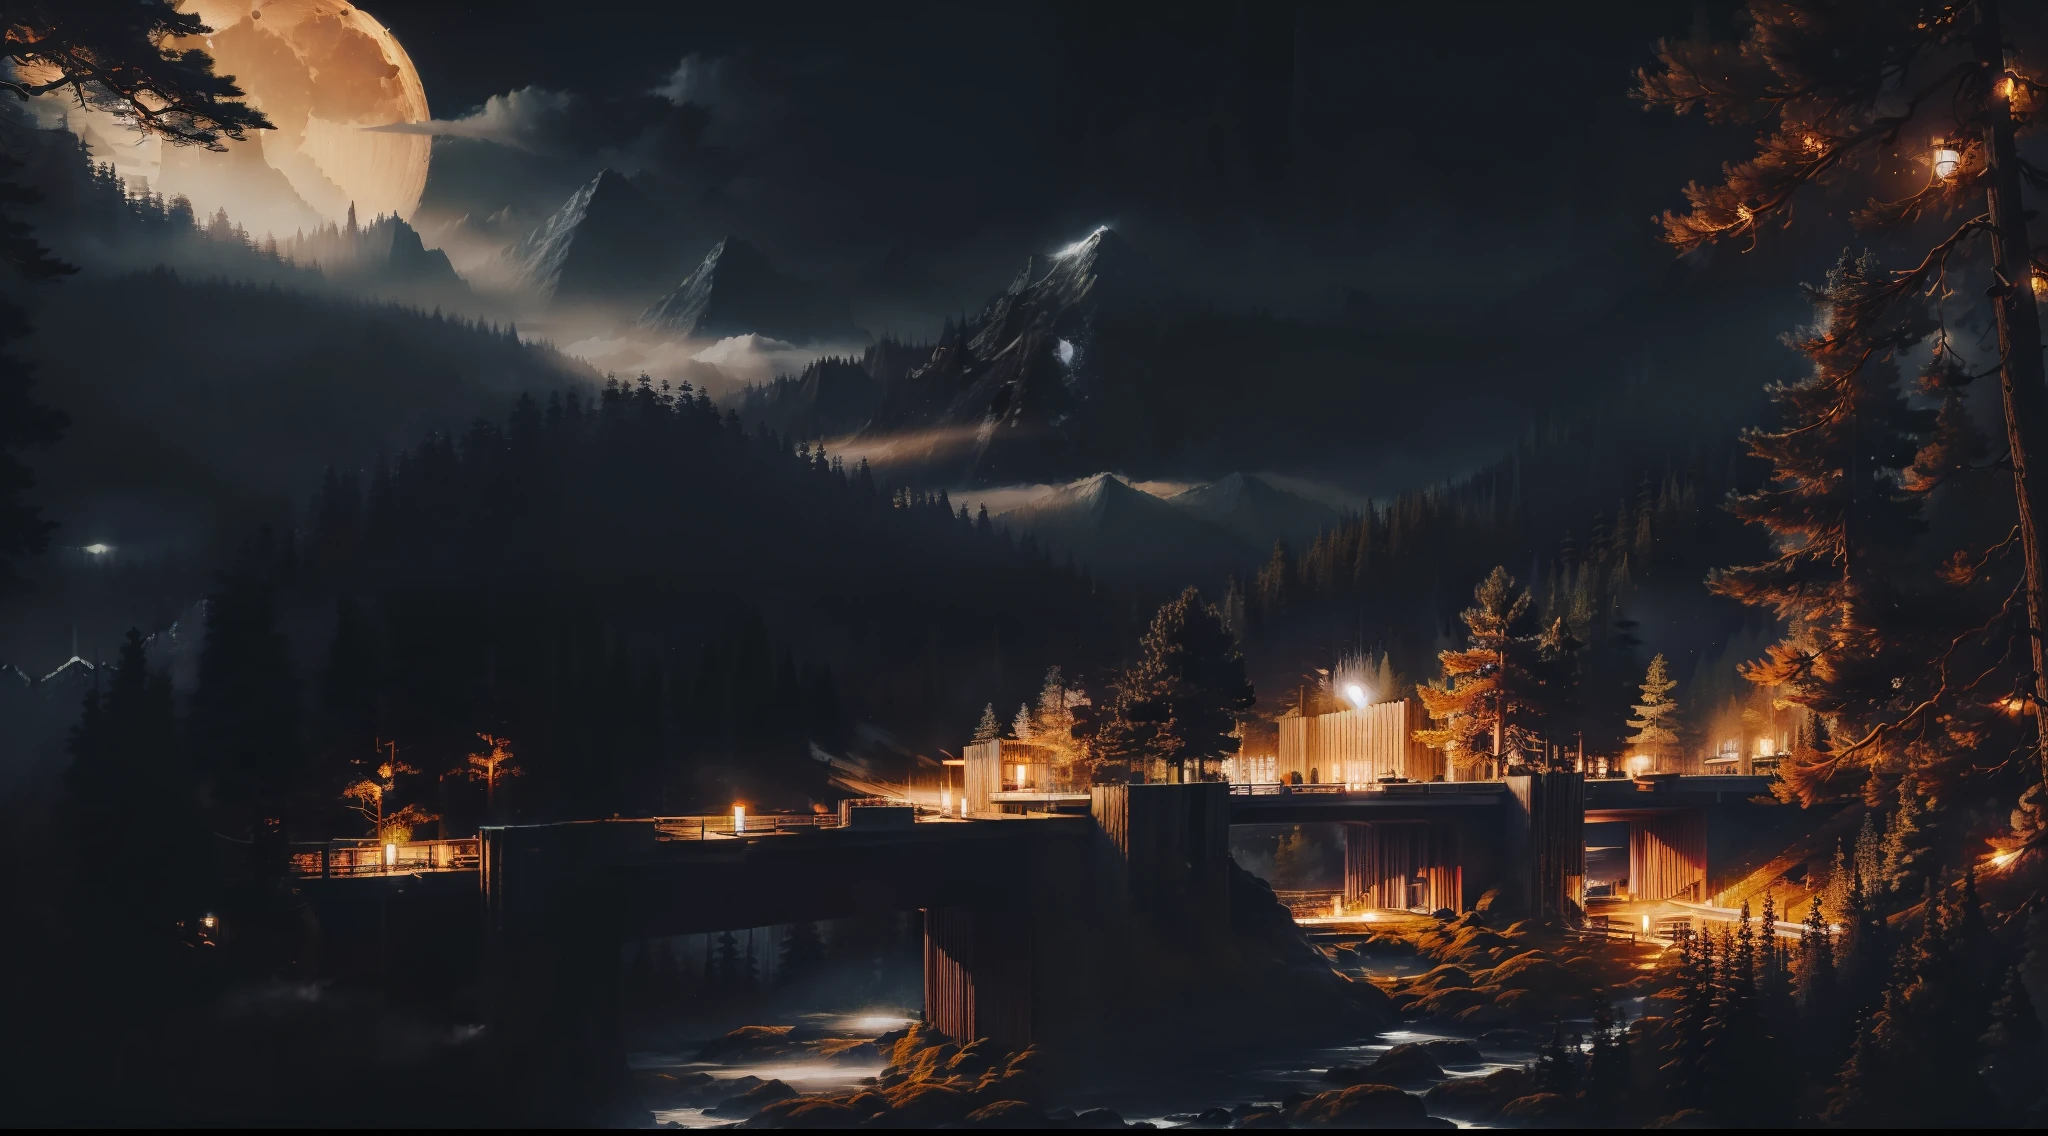 ночной лес с большим деревянным мостом между деревьями и горами, яркая луна в небе, светлячки и огни между деревьями и туман на земле